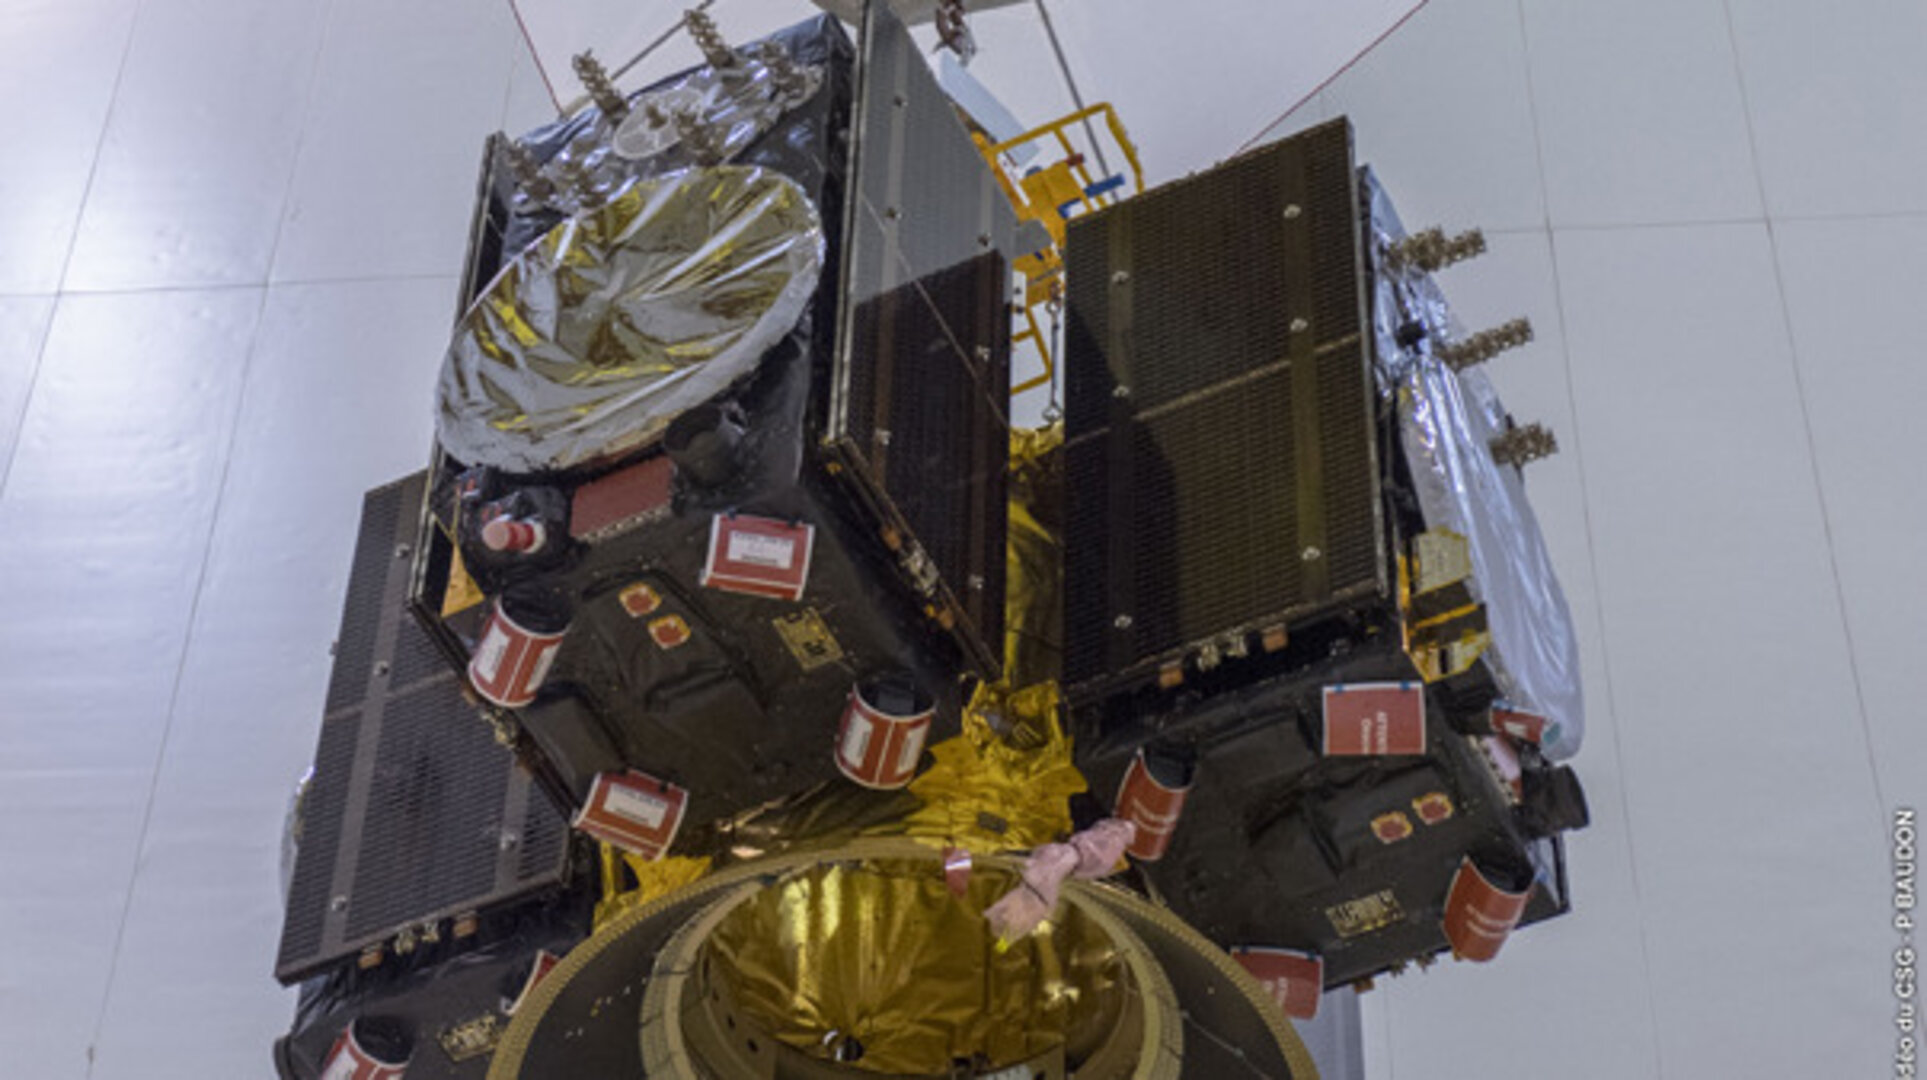 Quartet of Galileo satellites pre-launch